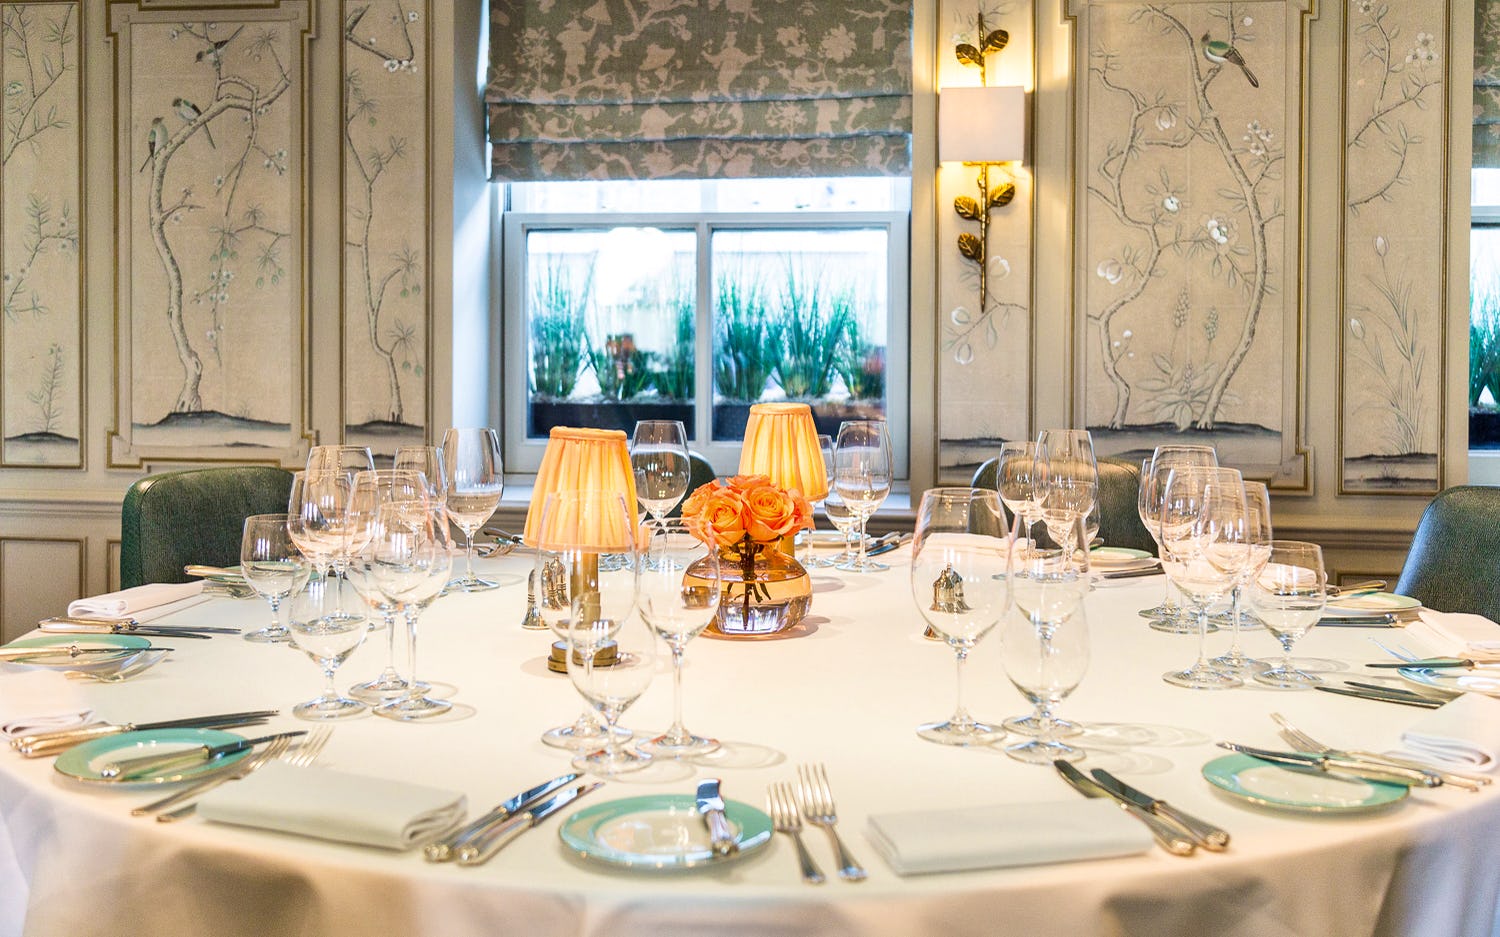 Fortnum and Mason luxury private dining venues london diamond jubilee tea salon table